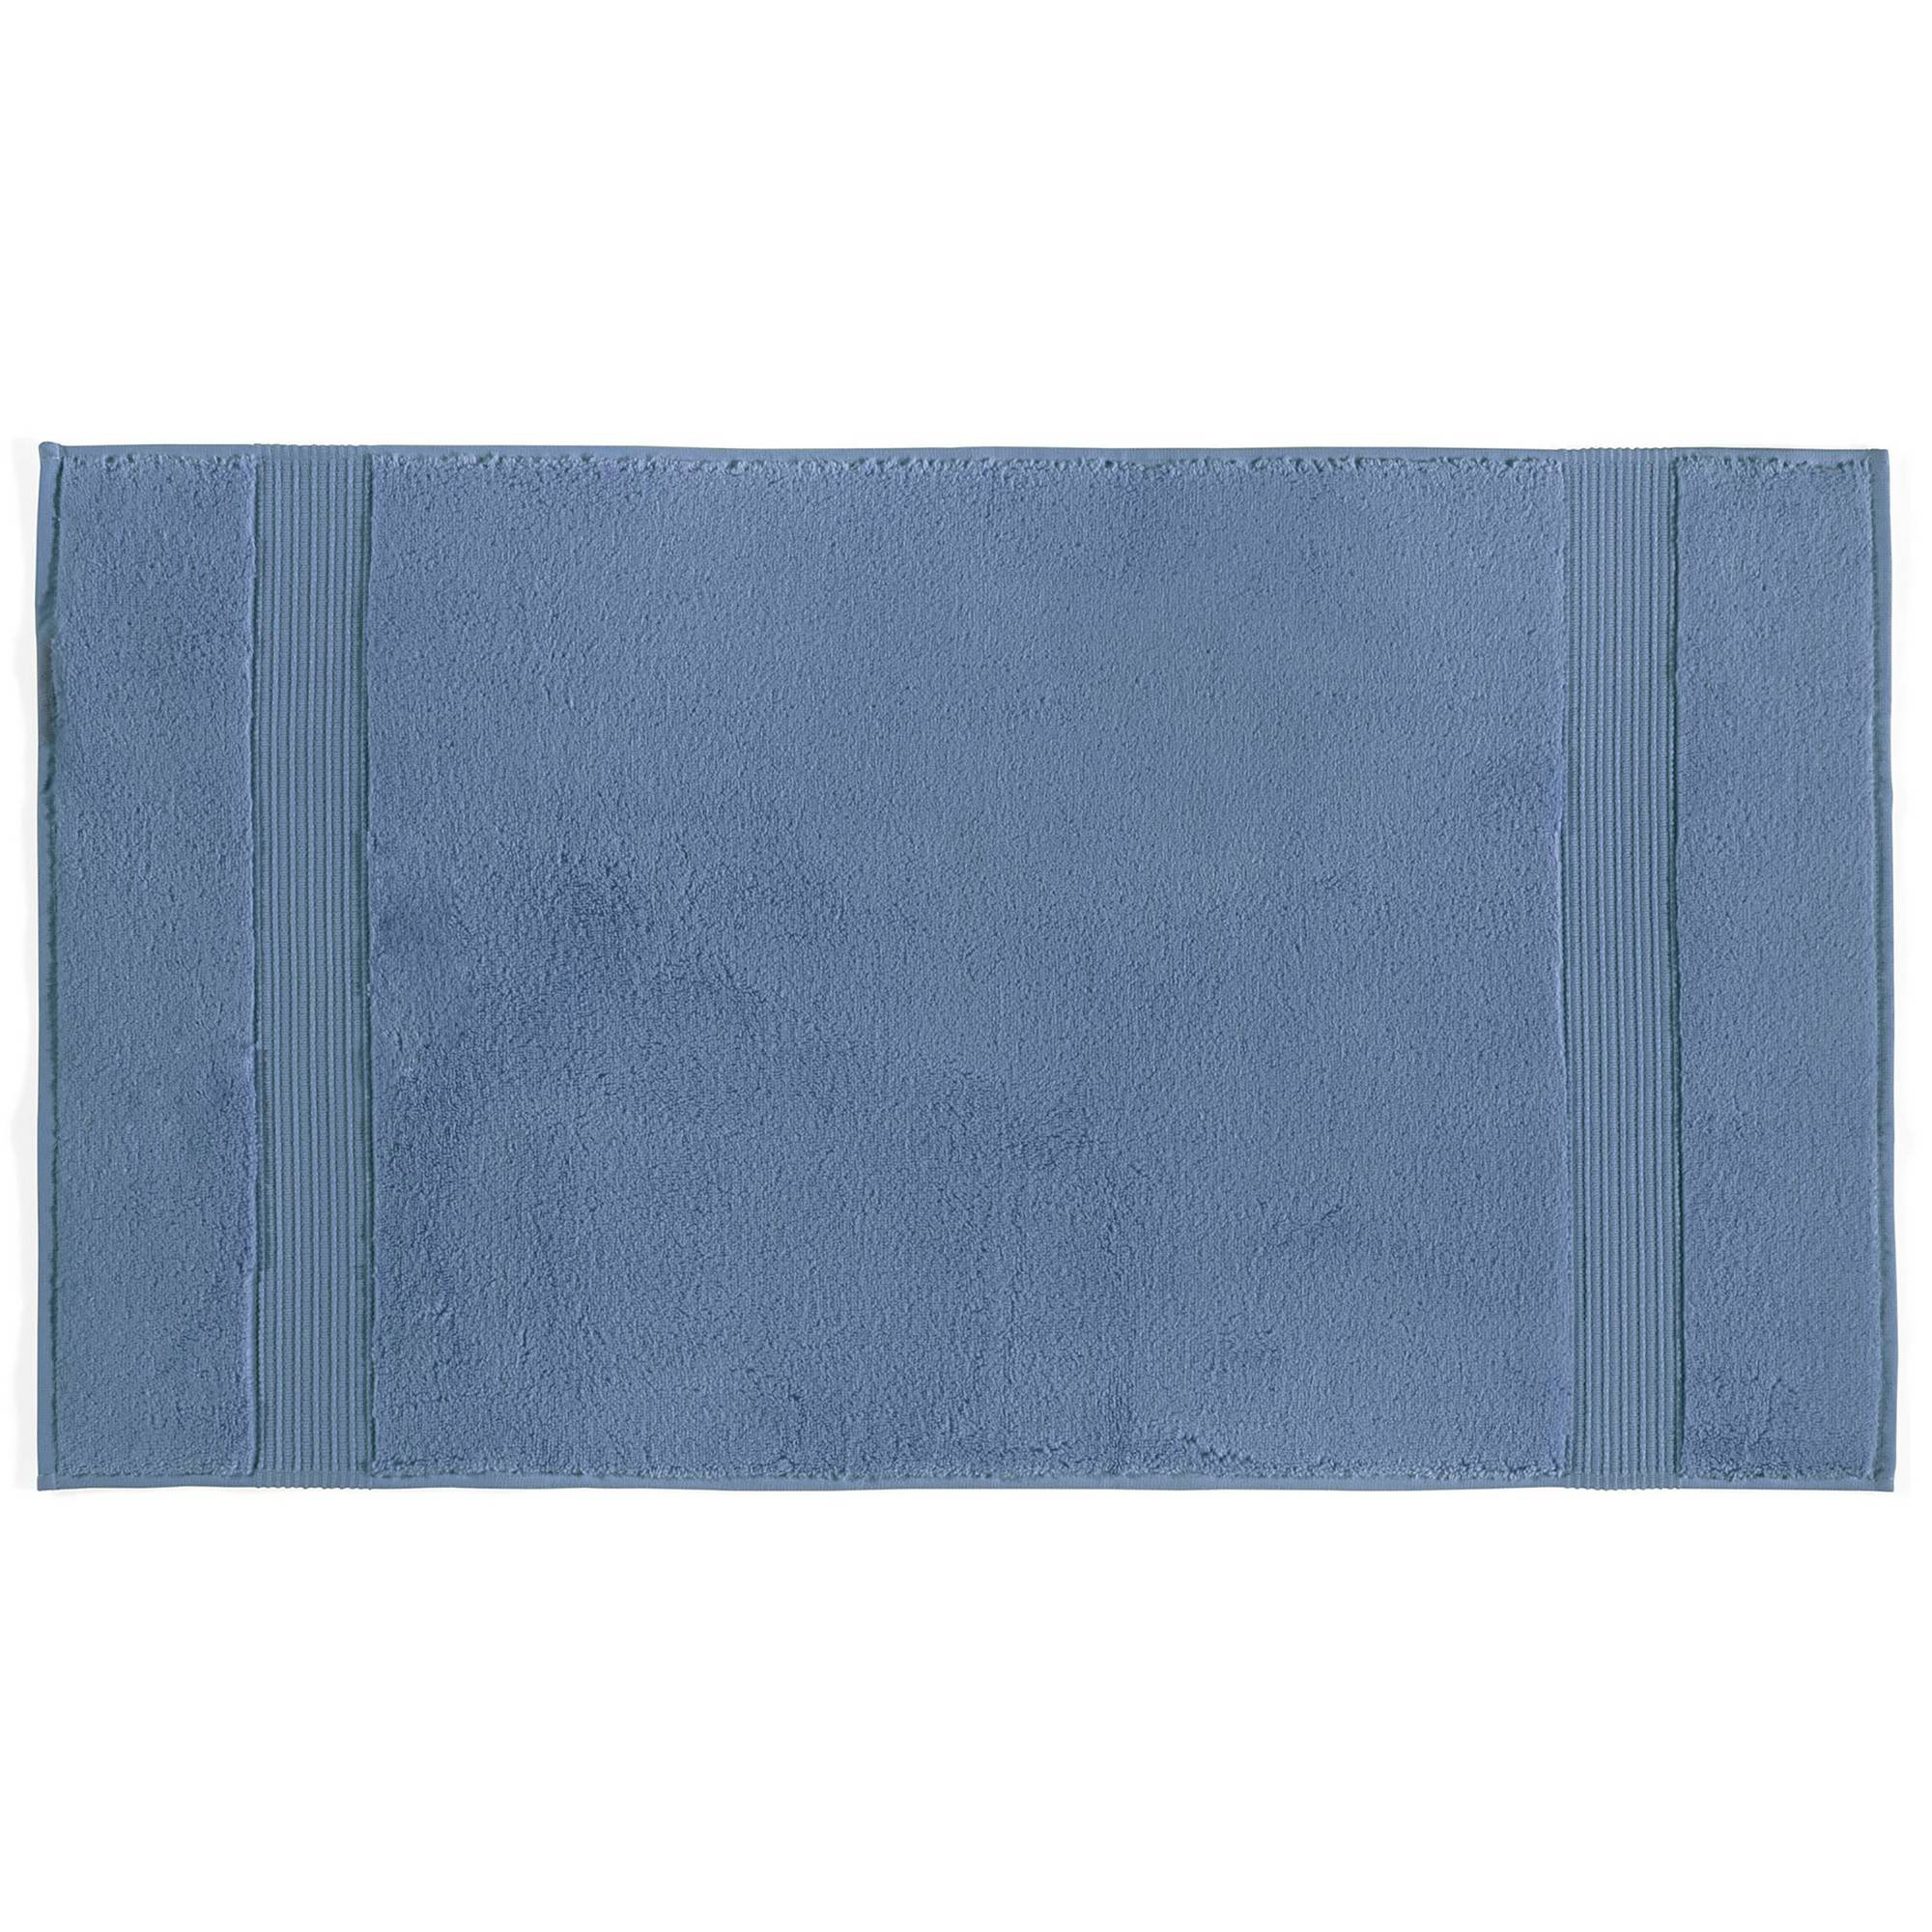 Crinitus 100 oton Handtuch Blau